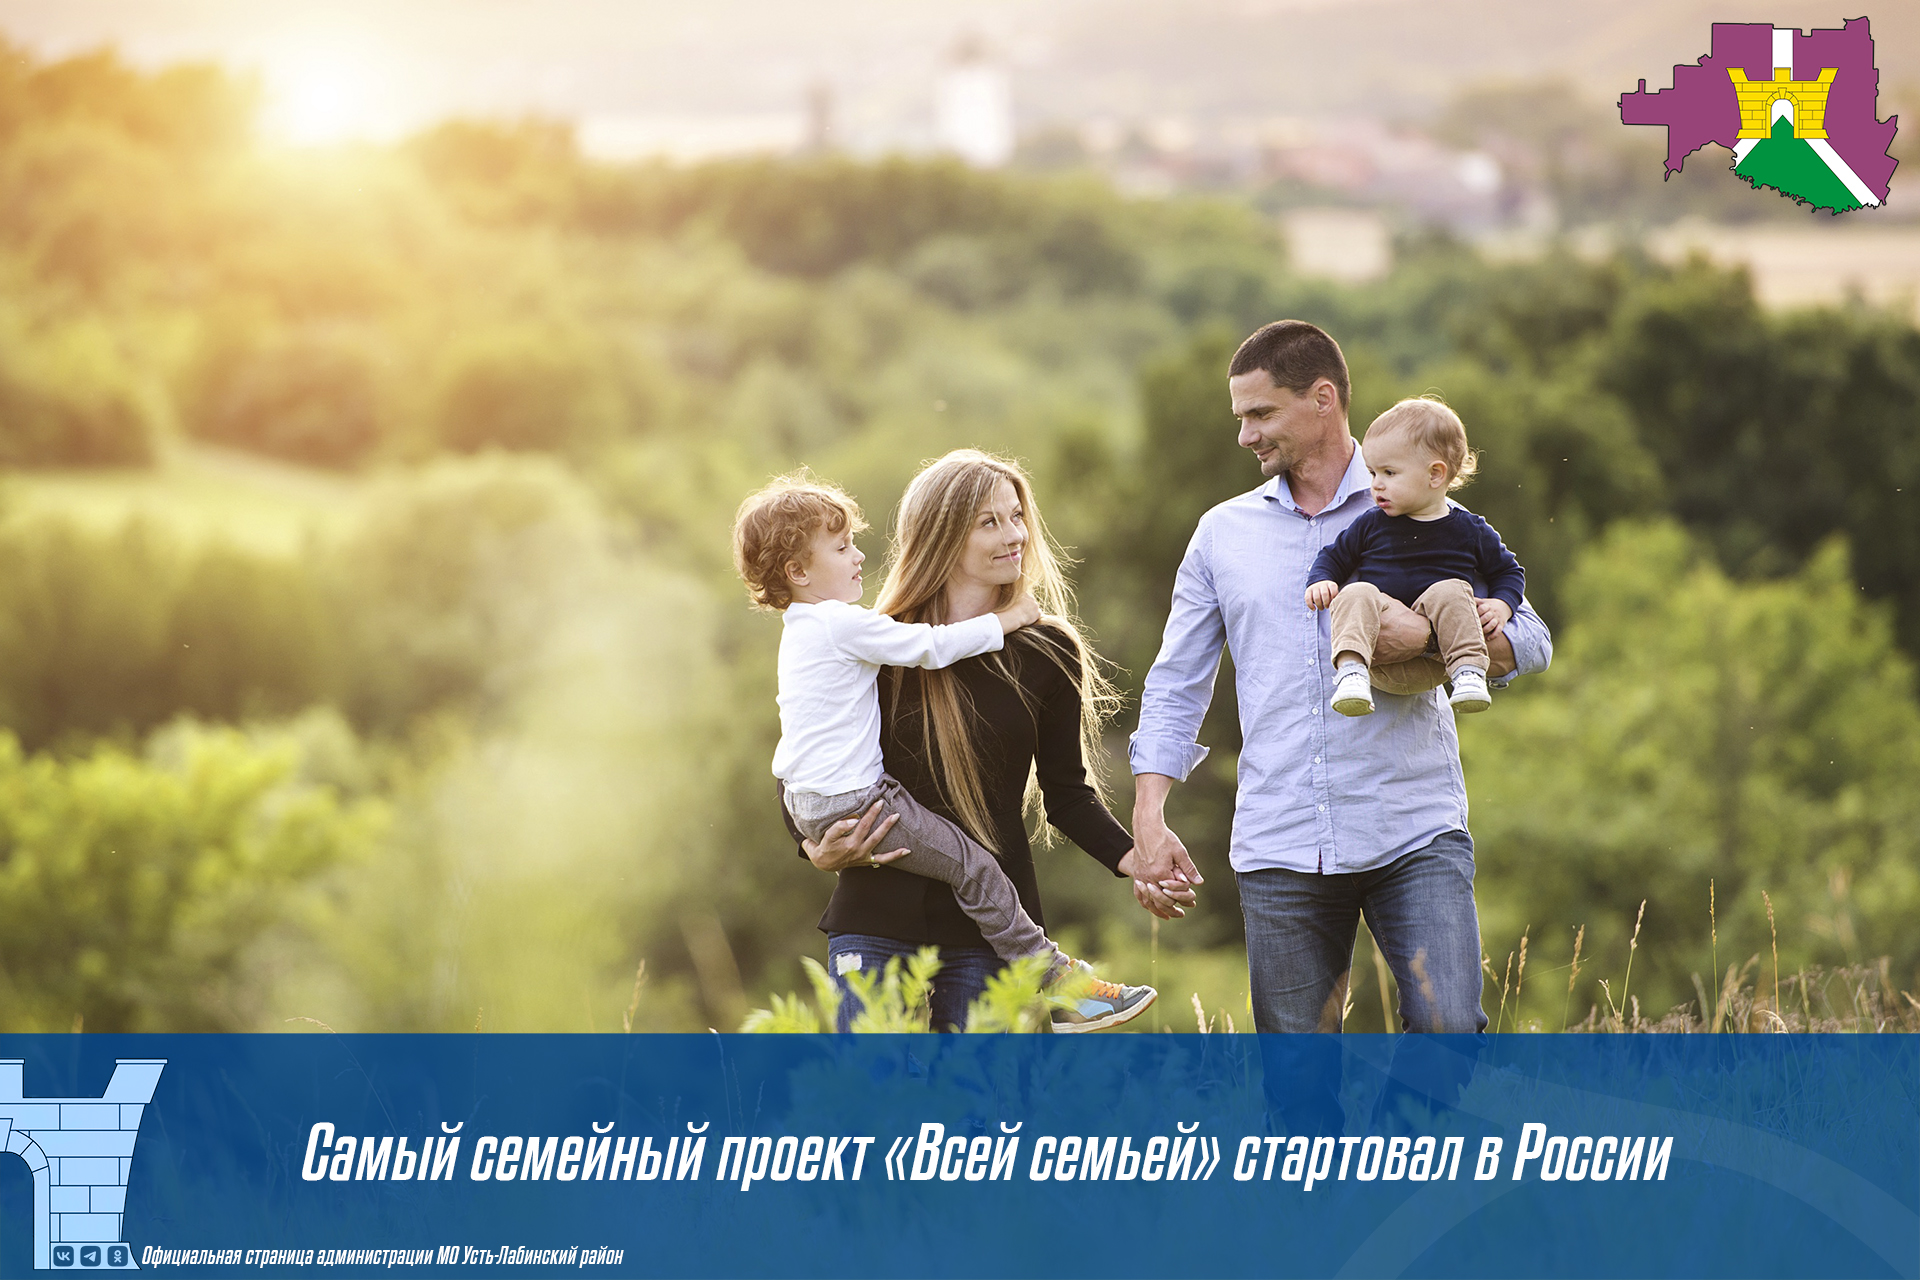 Самый семейный проект "Всей семьей" стартовал в России